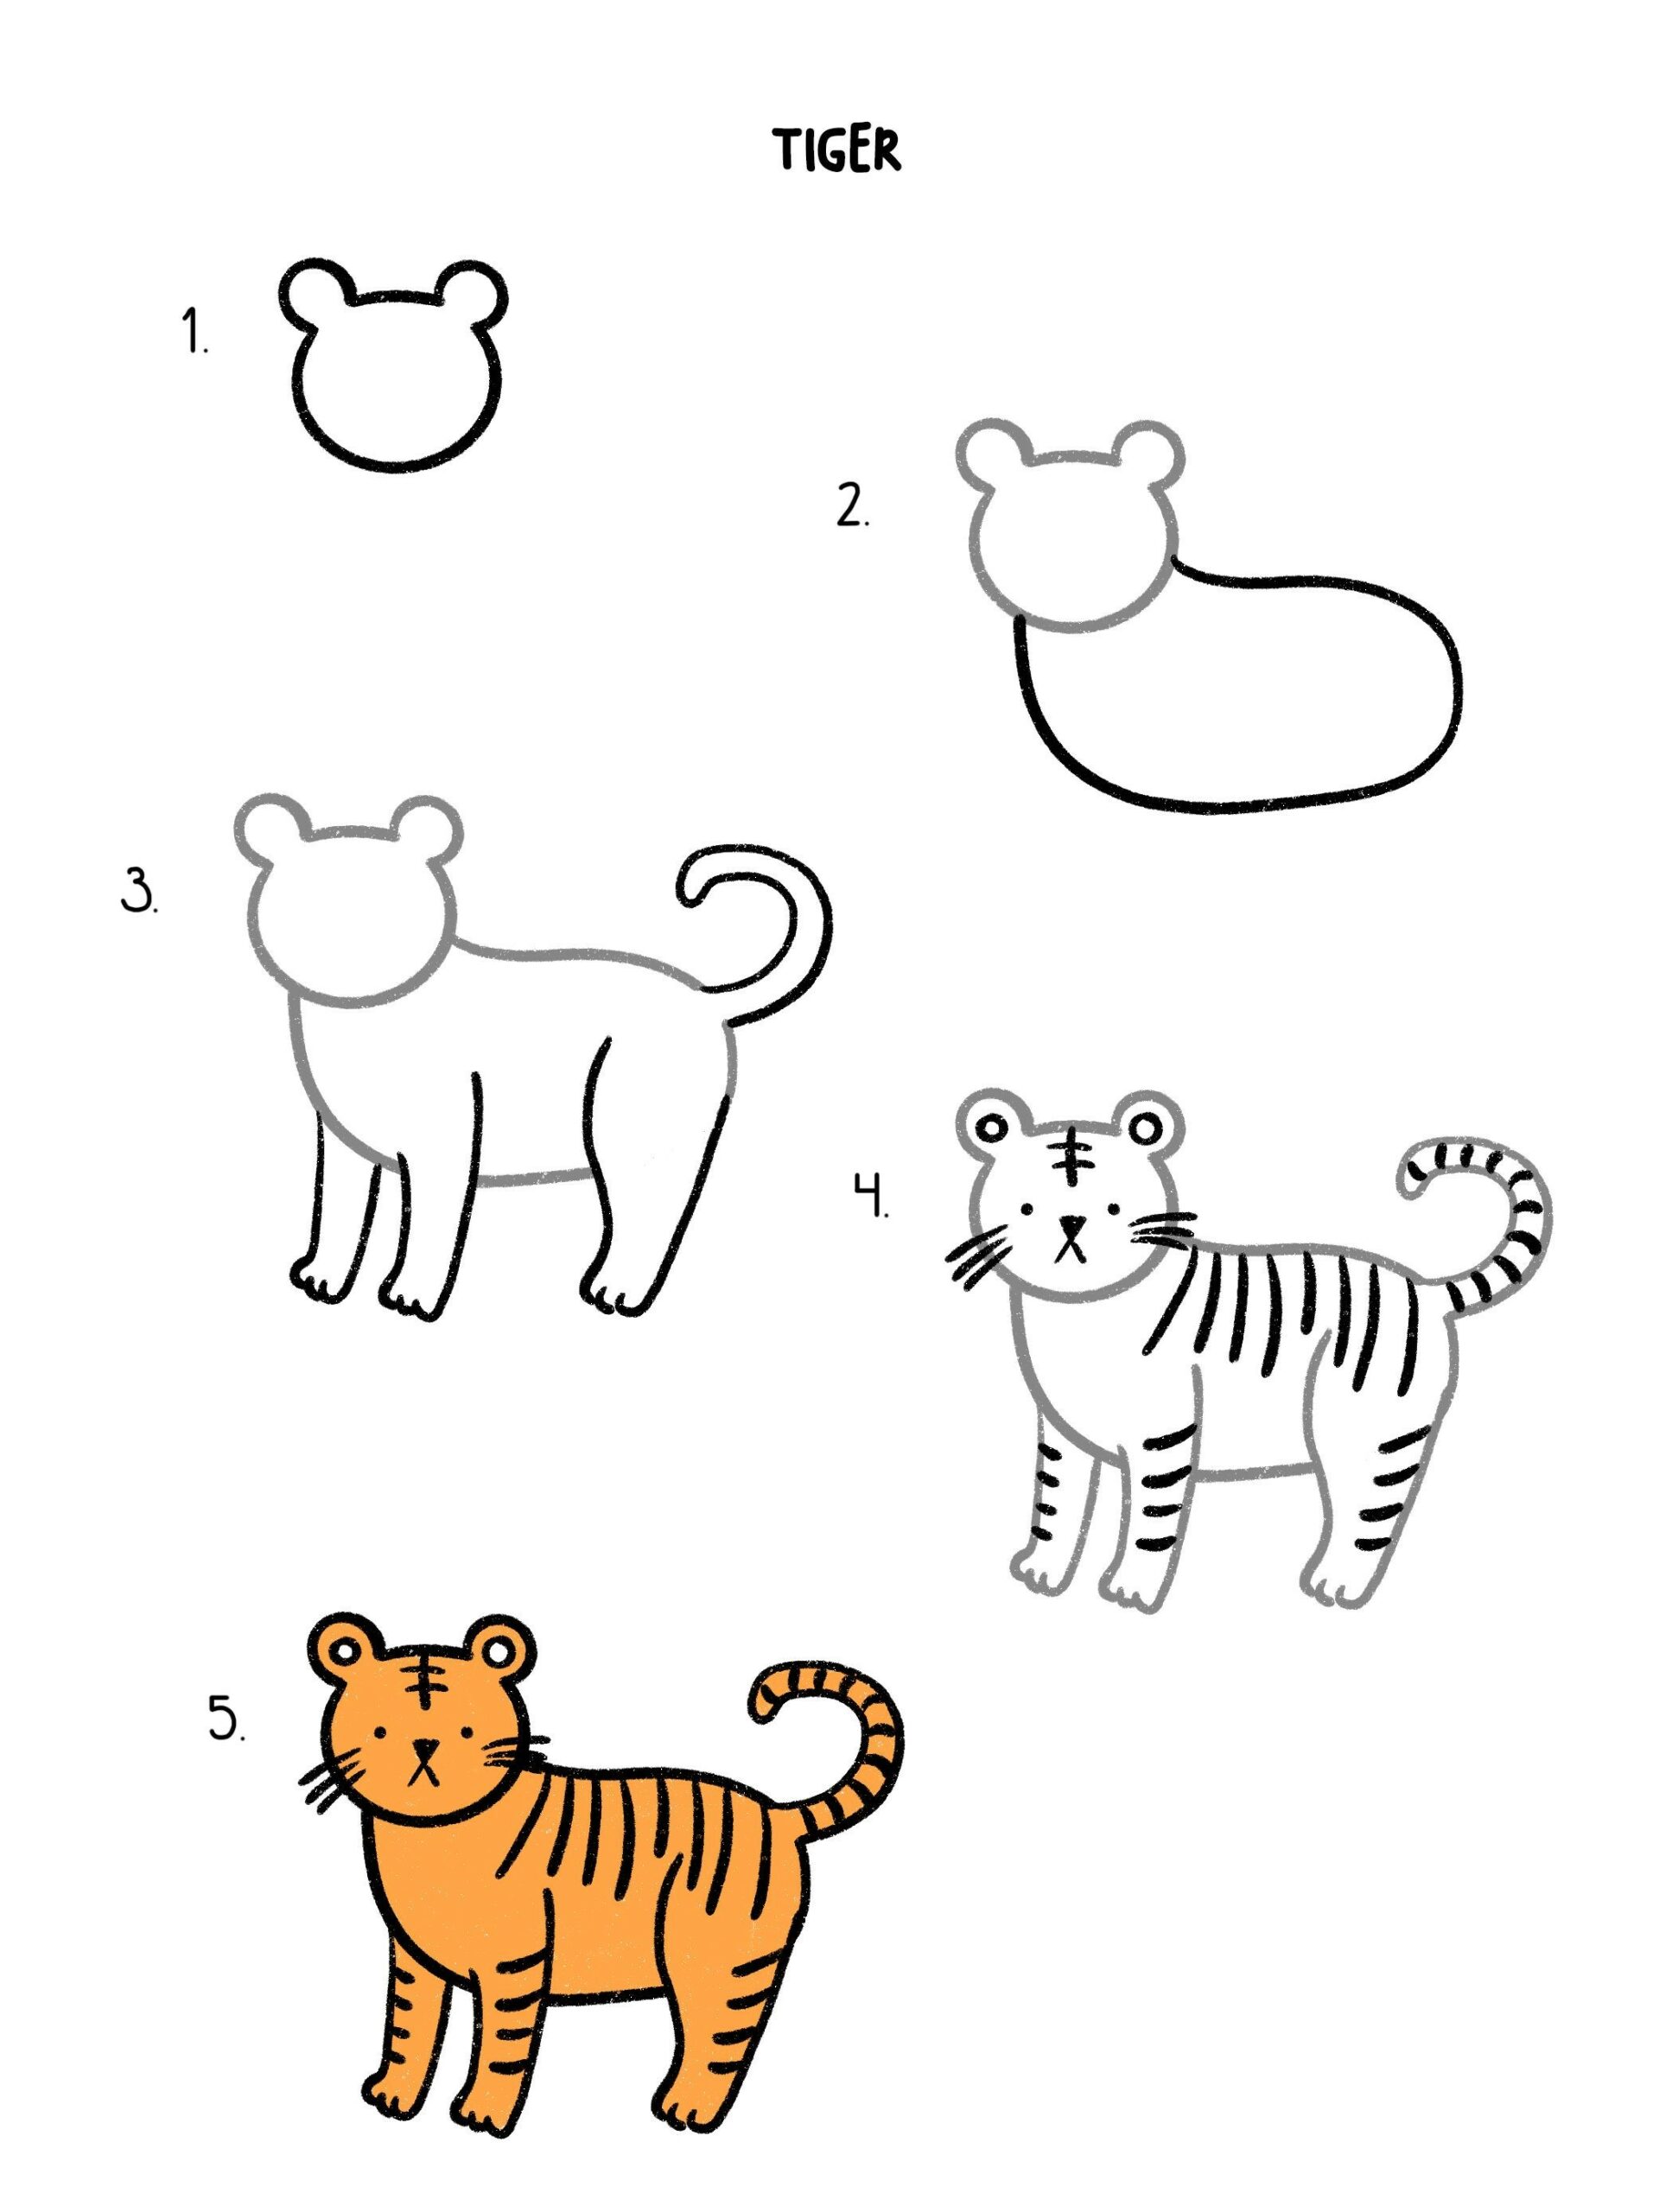 Hướng dẫn Cách vẽ con hổ đơn giản cho người mới học vẽ tranh